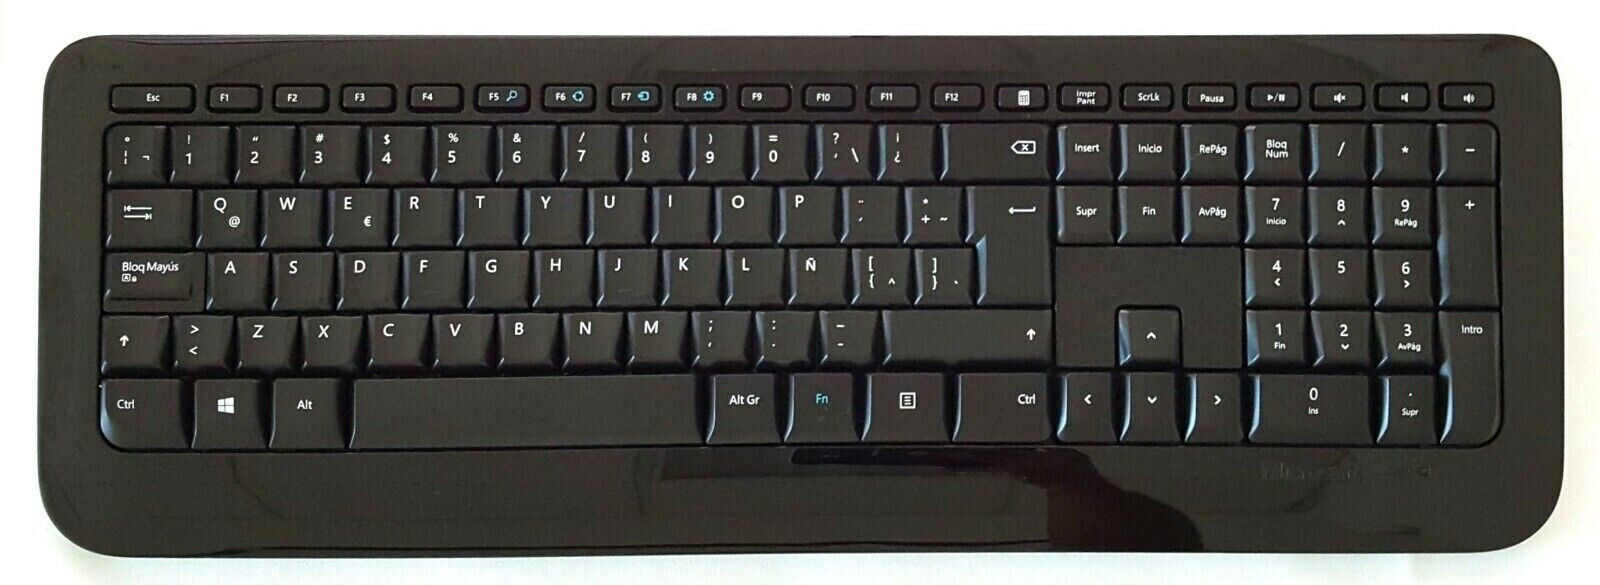 Microsoft Wireless Keyboard 850 Special Edition AES PZ3-00004 Spanish Español